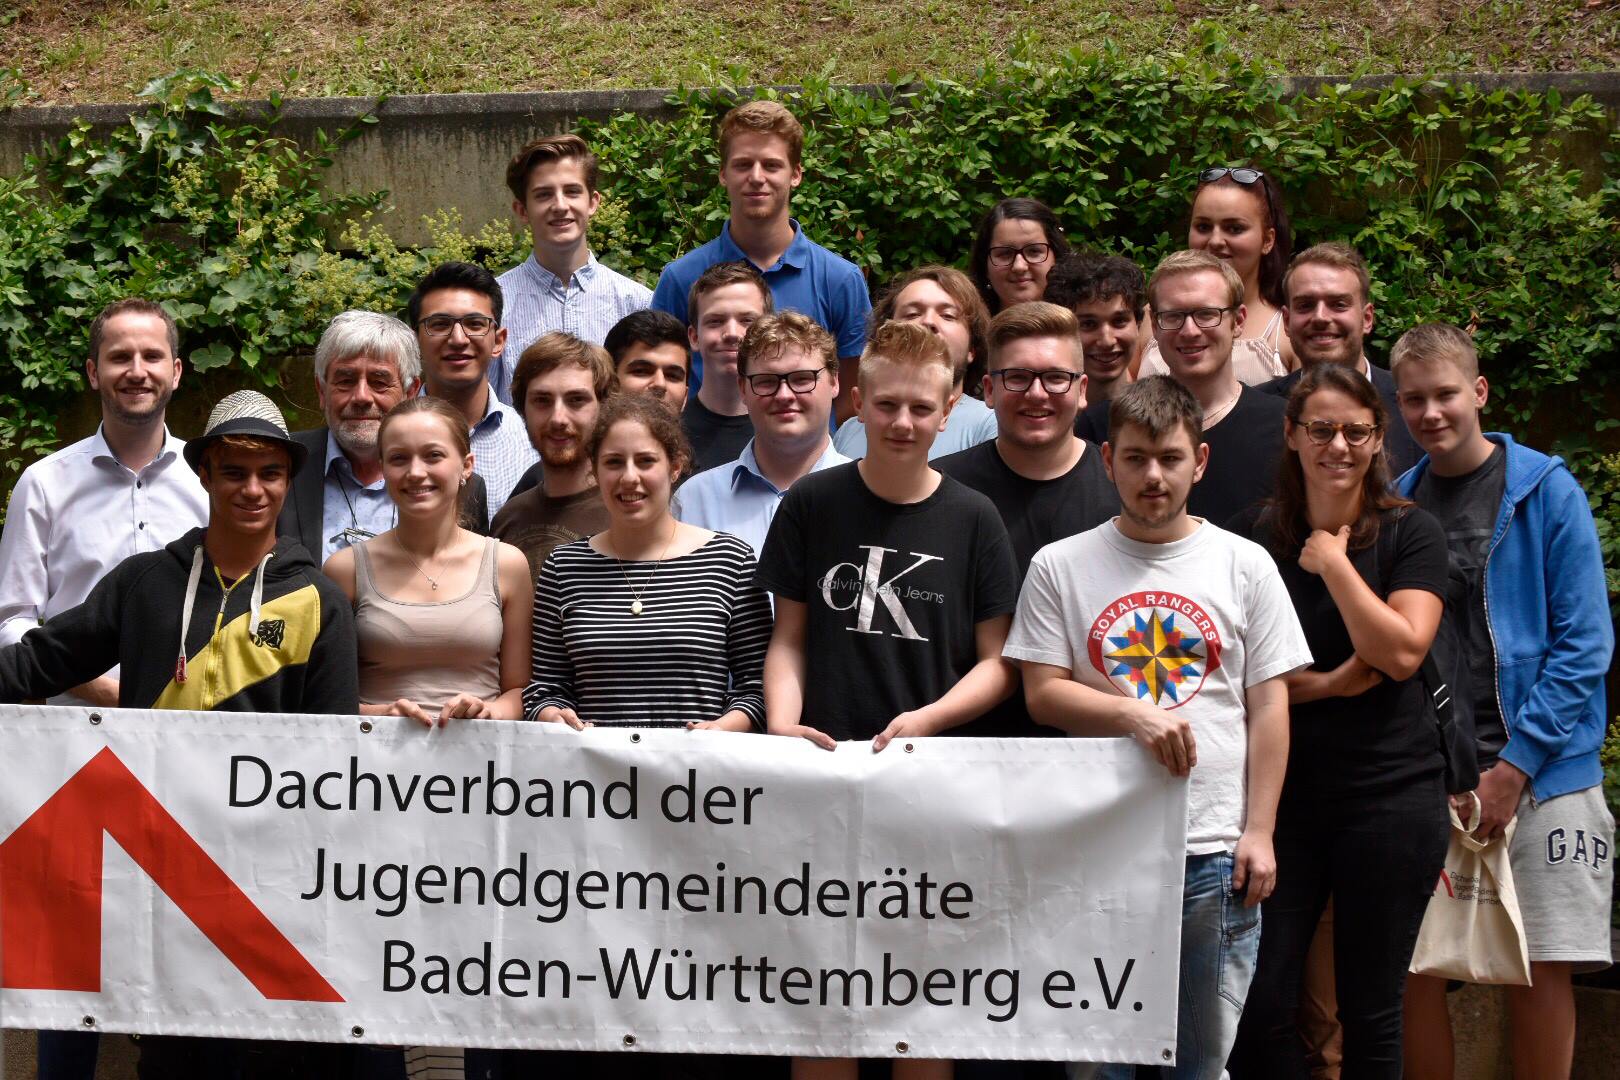 You are currently viewing Engagement: Zu finden bei Jugendgemeinderäten in Baden-Württemberg!